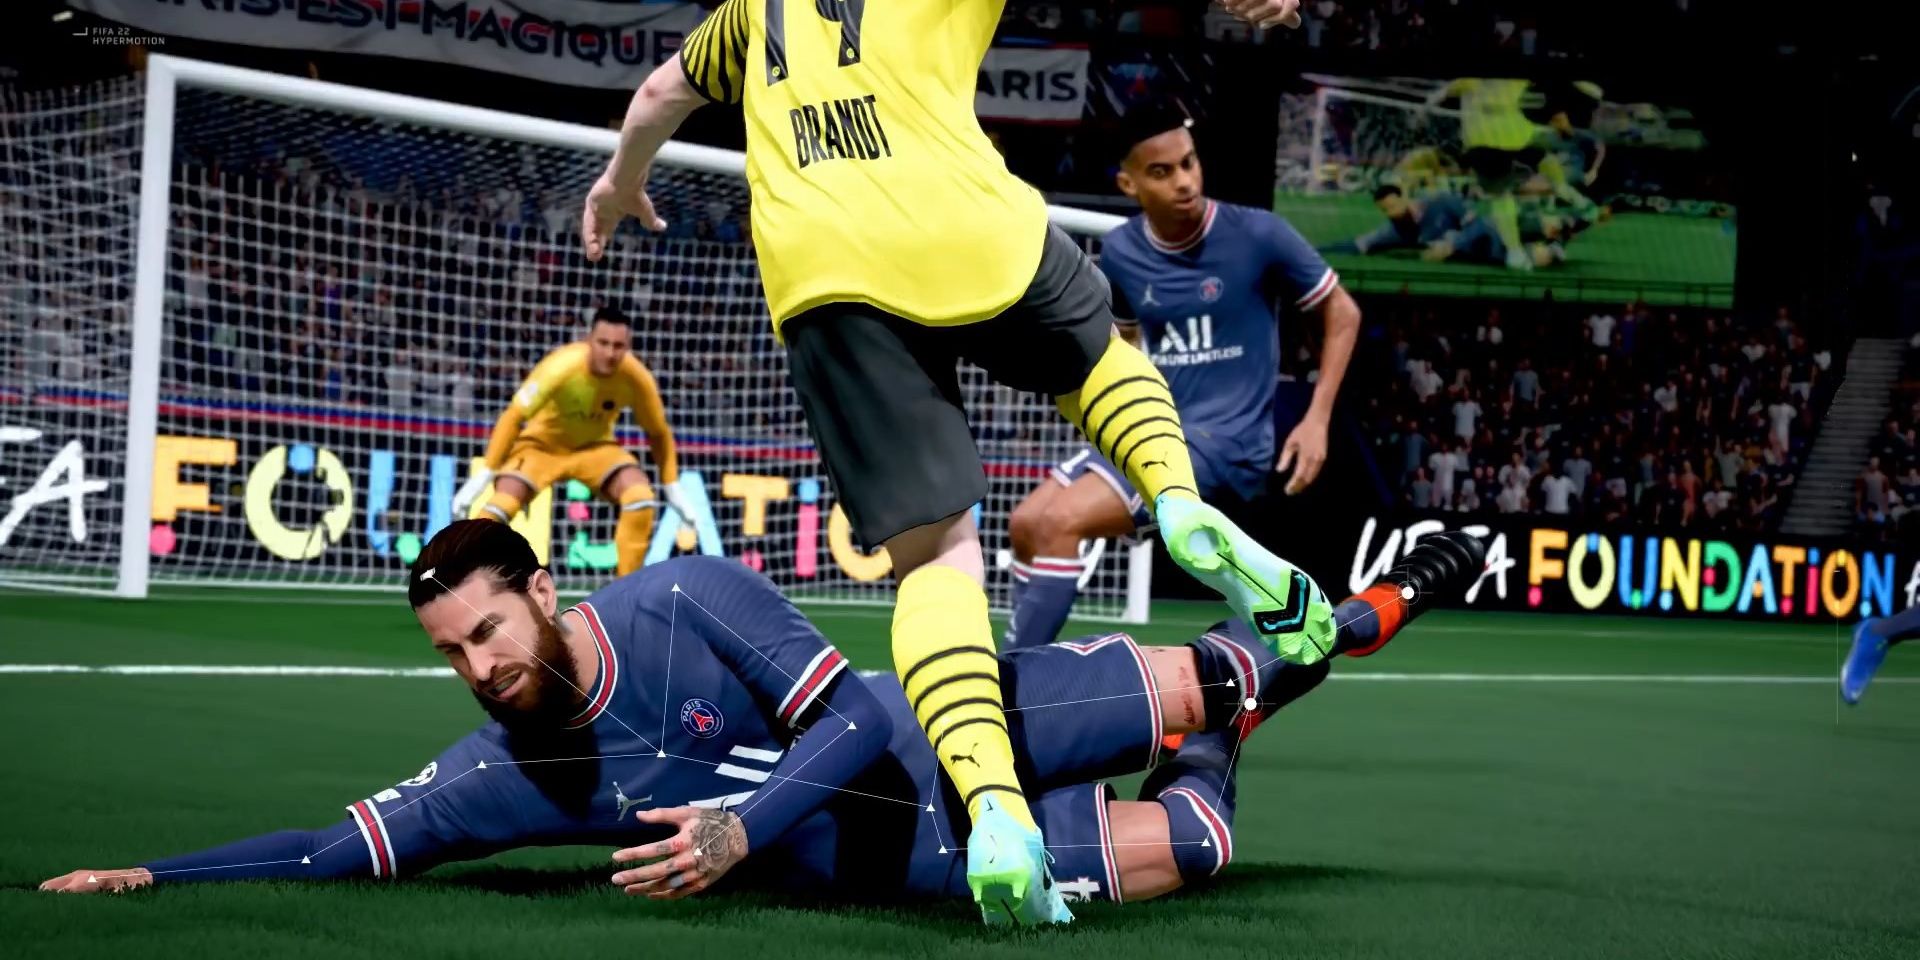 Defending in FIFA 22